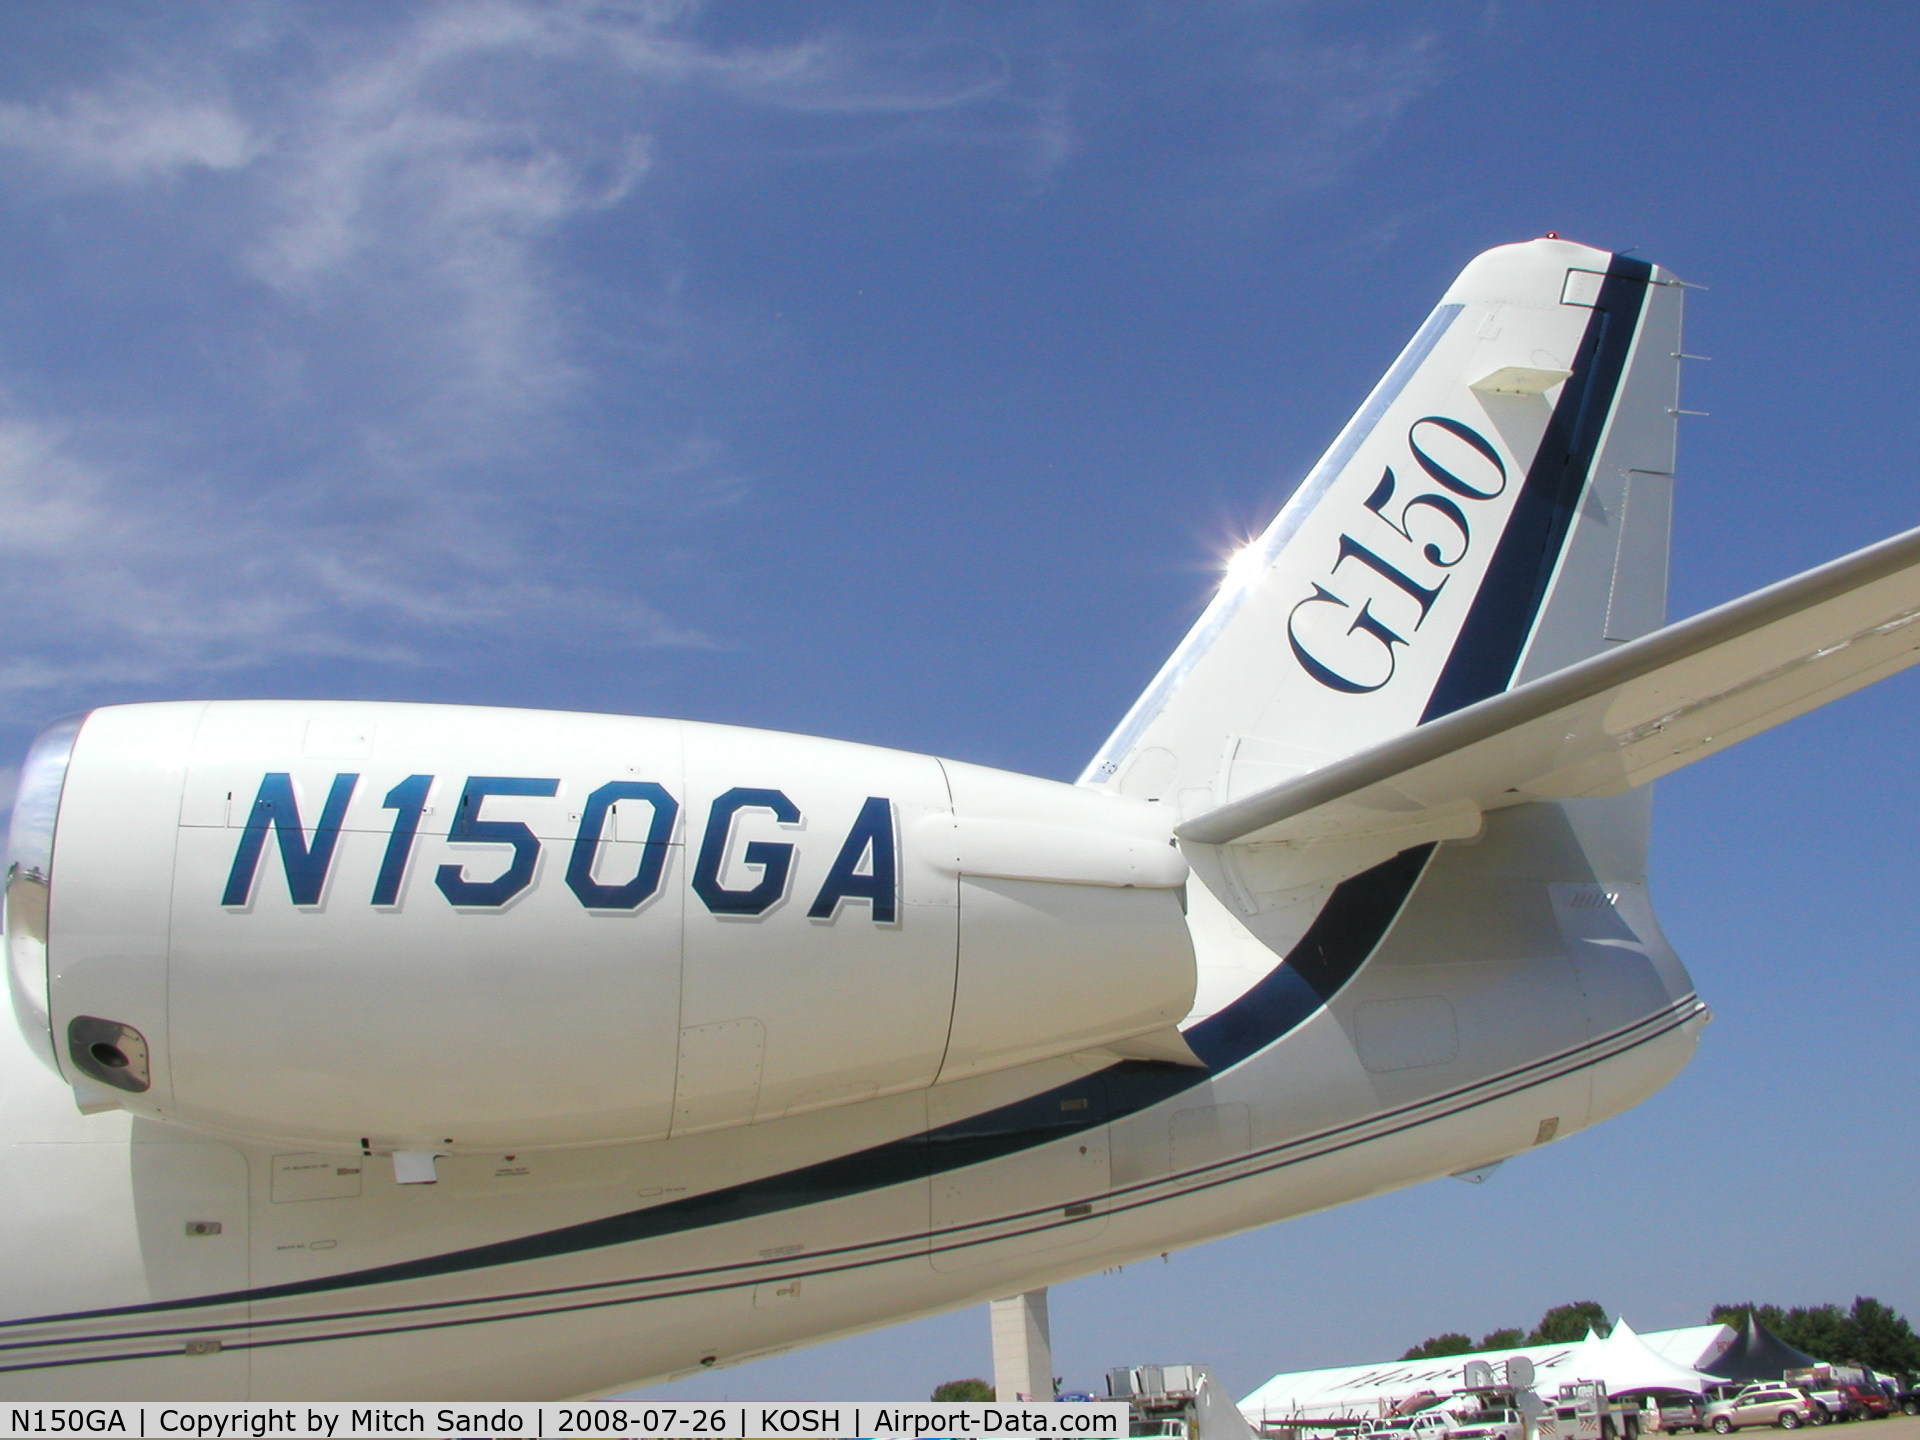 N150GA, 2007 Israel Aerospace Industries Gulfstream G150 C/N 286, EAA AirVenture 2008.